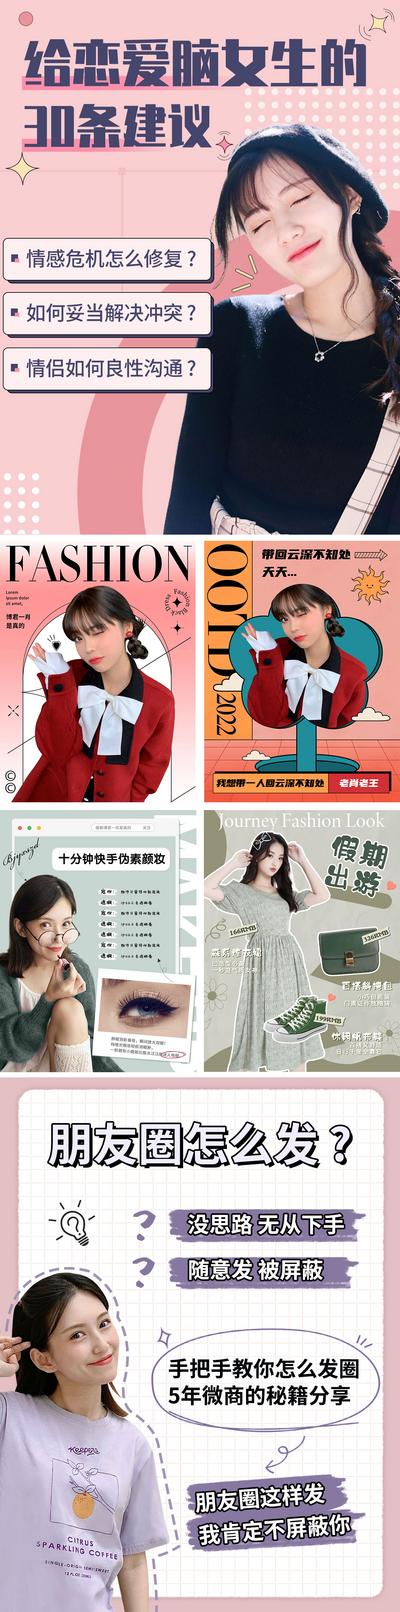 南门网 海报 小红书 攻略 美妆 穿搭 时尚 可爱 日系 人物 系列